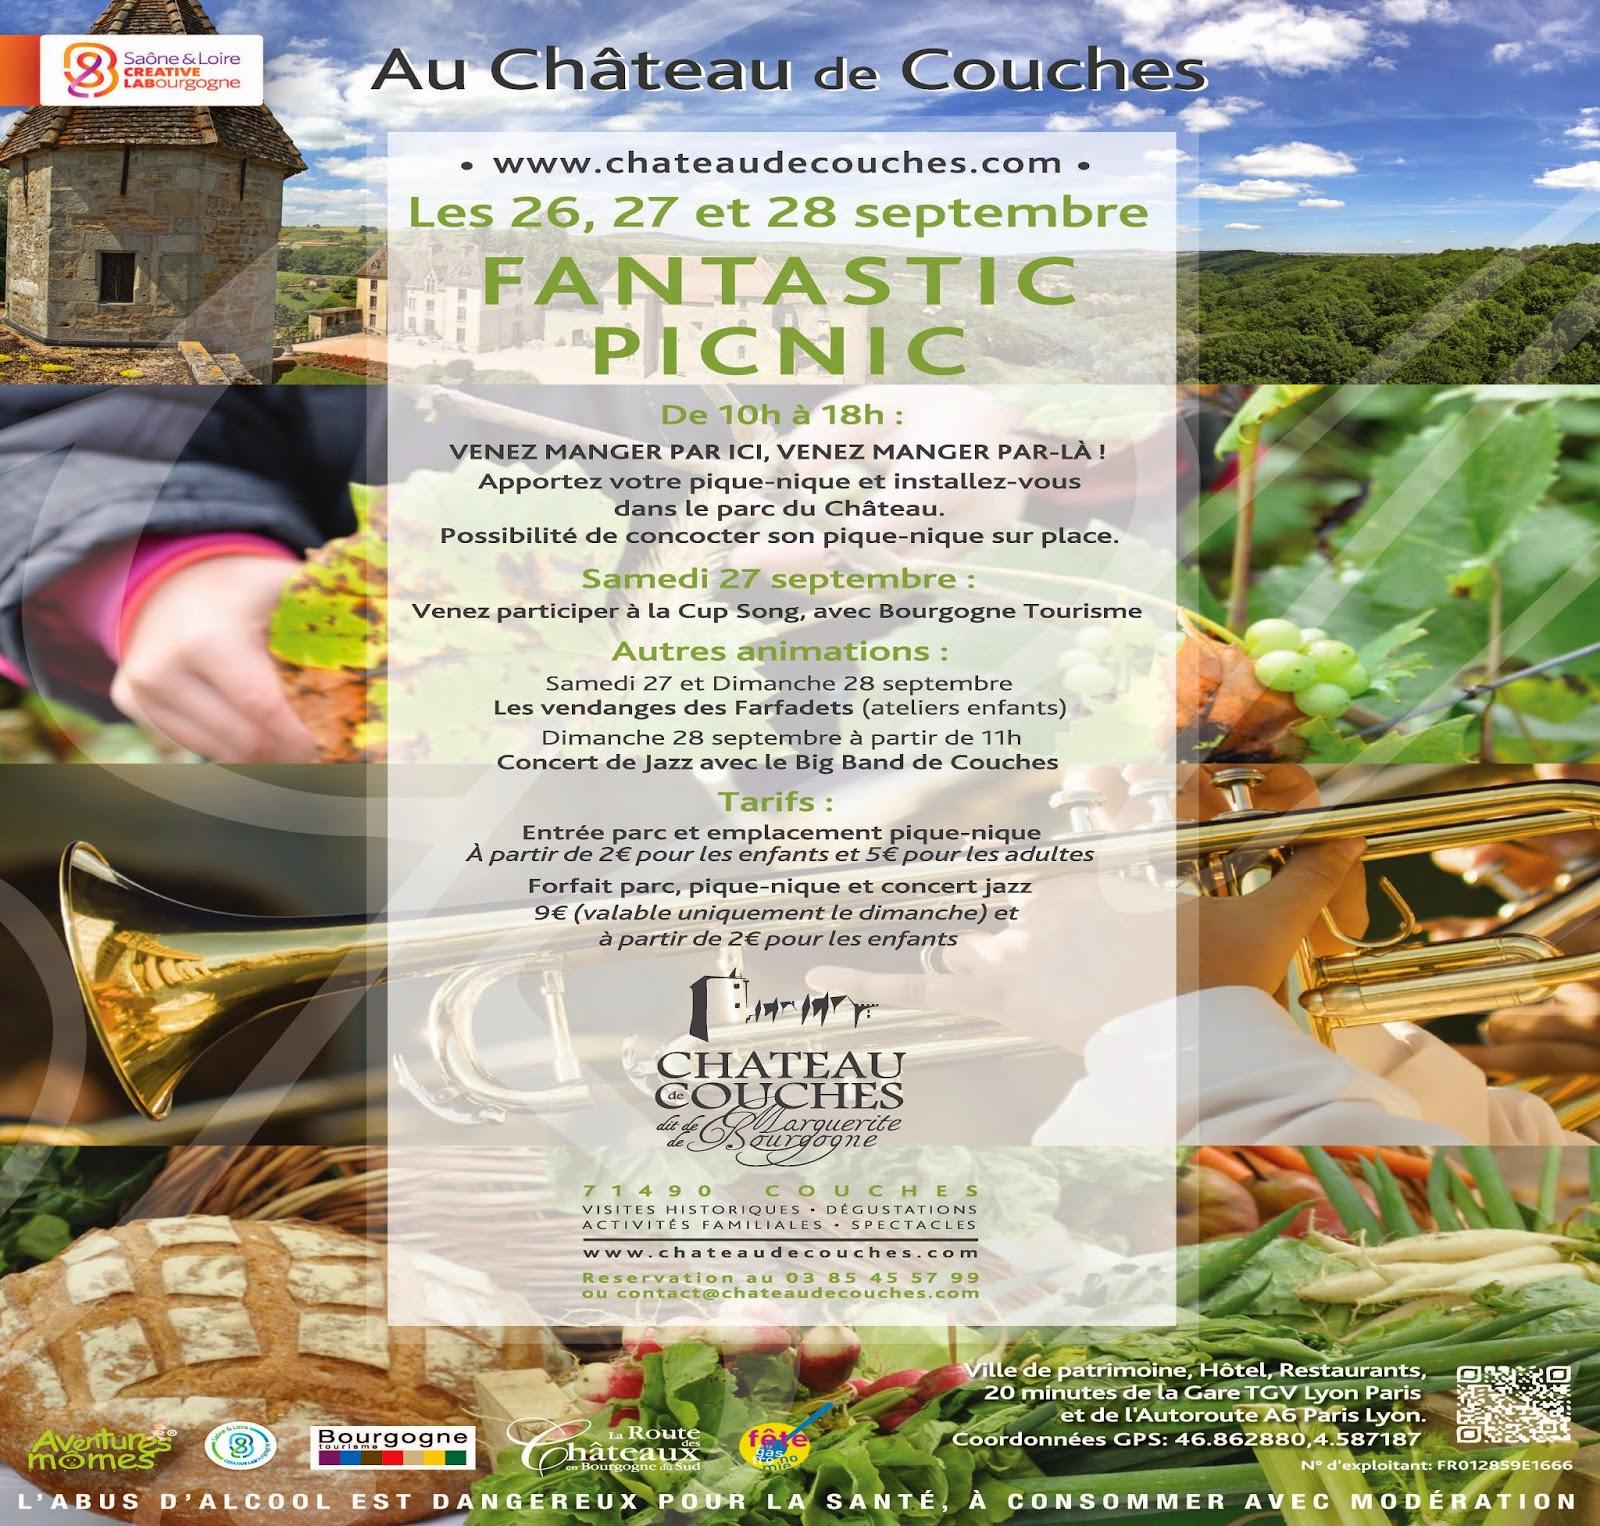 Du 26 au 28 septembre, bienvenue au Picnic chic et tournage d'une Cup Song au Château de Couches !